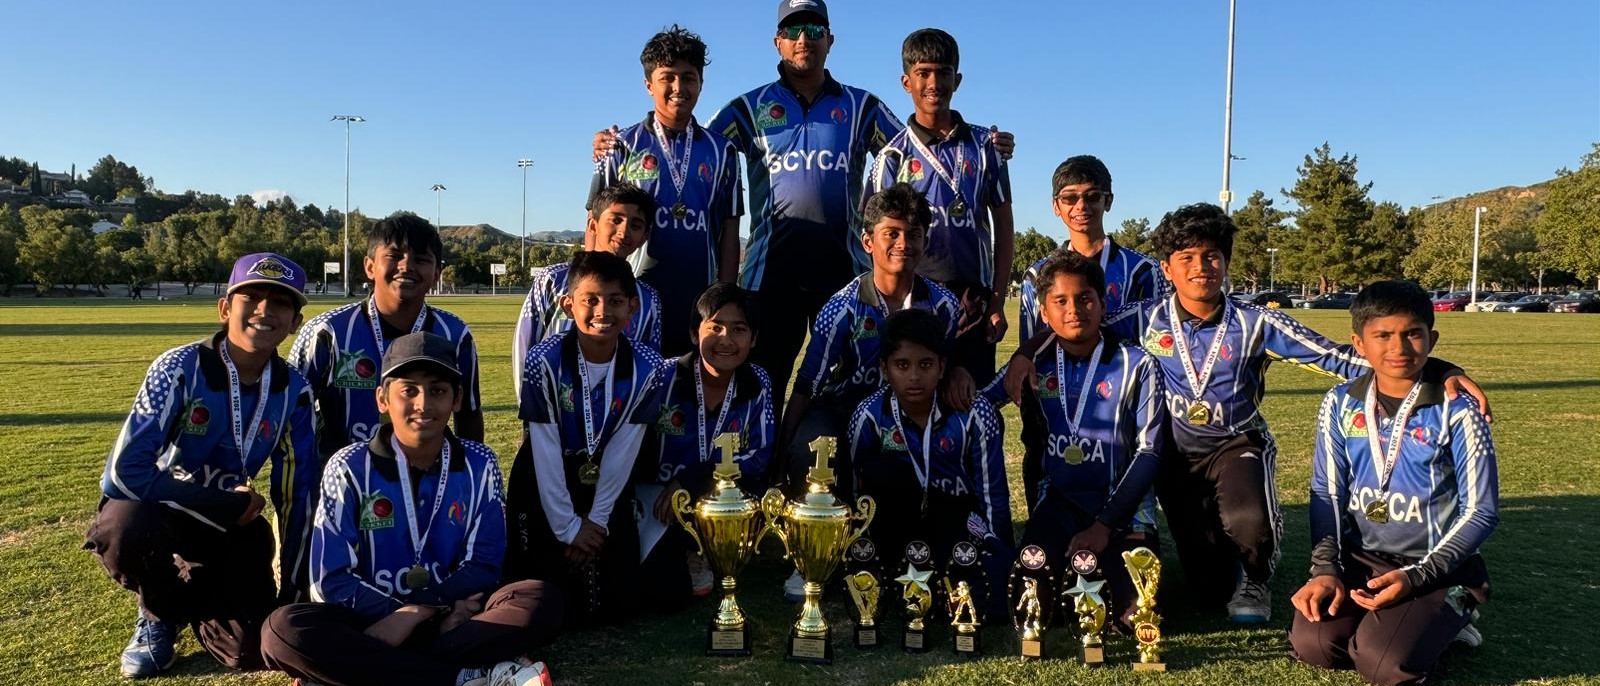 SCYCA Clinches Championship Title in Santa Clarita Valley Cricket Tournament